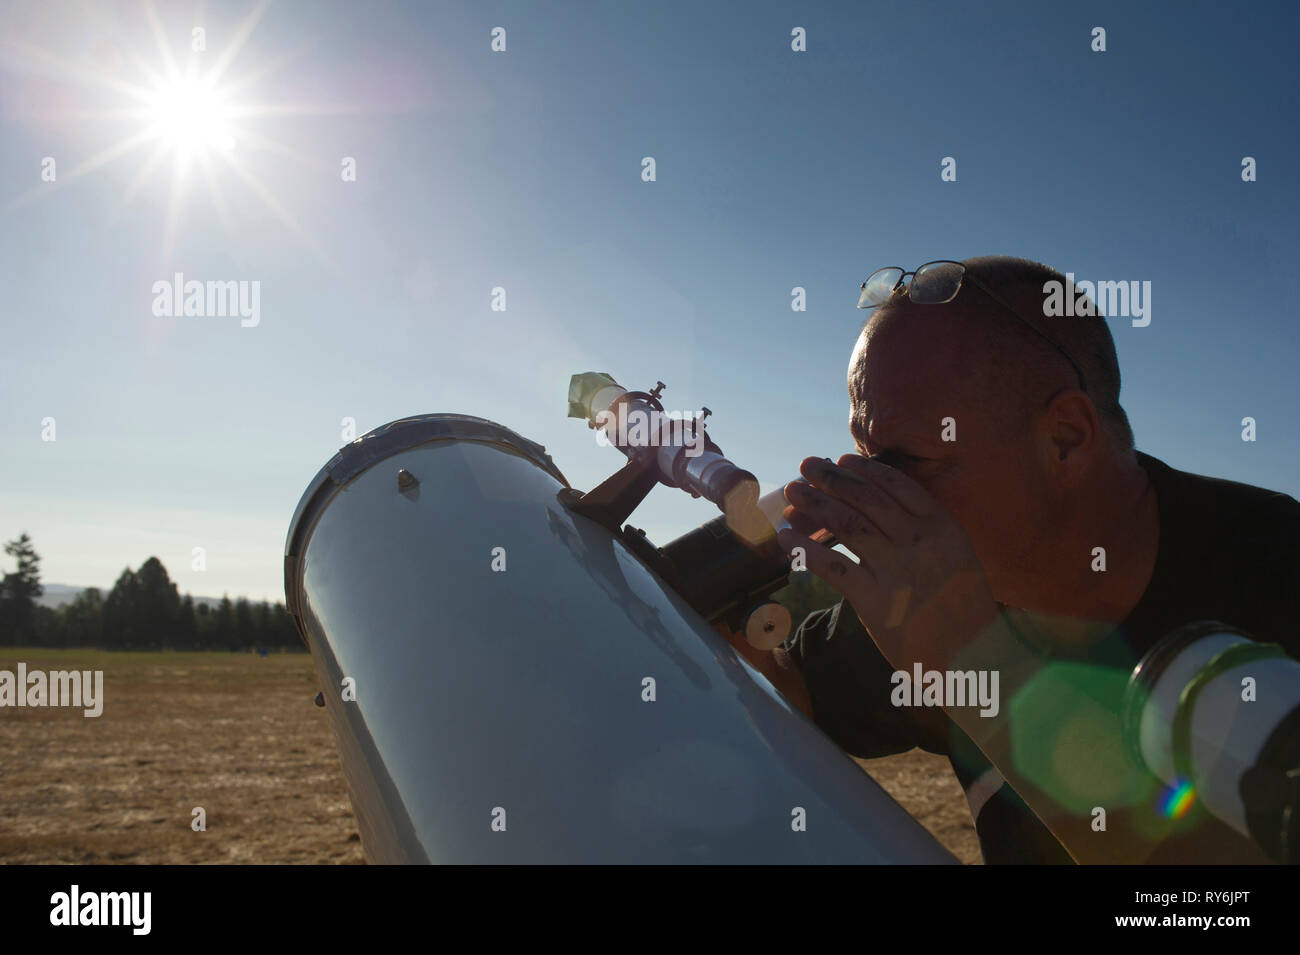 Astronomo cercando sole luminoso attraverso il cannocchiale contro il cielo chiaro durante la giornata di sole Foto Stock